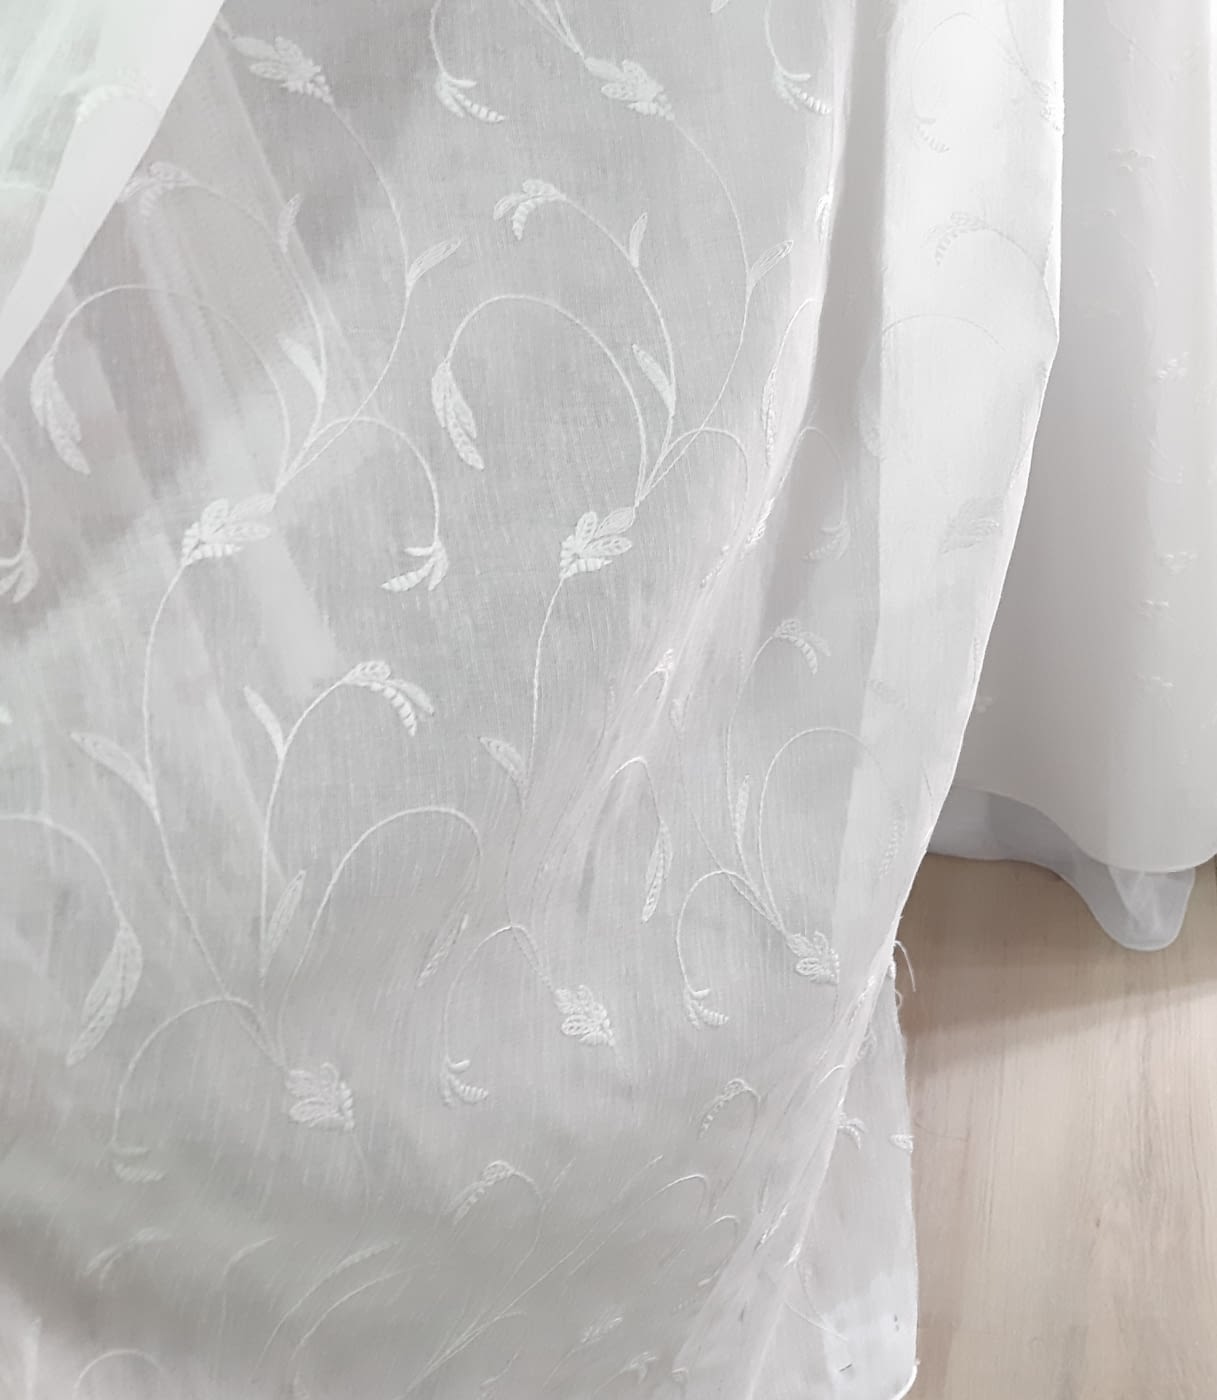 Visillo de Hojas confeccionado Blanco exótico de poliéster de 260x140 cm 